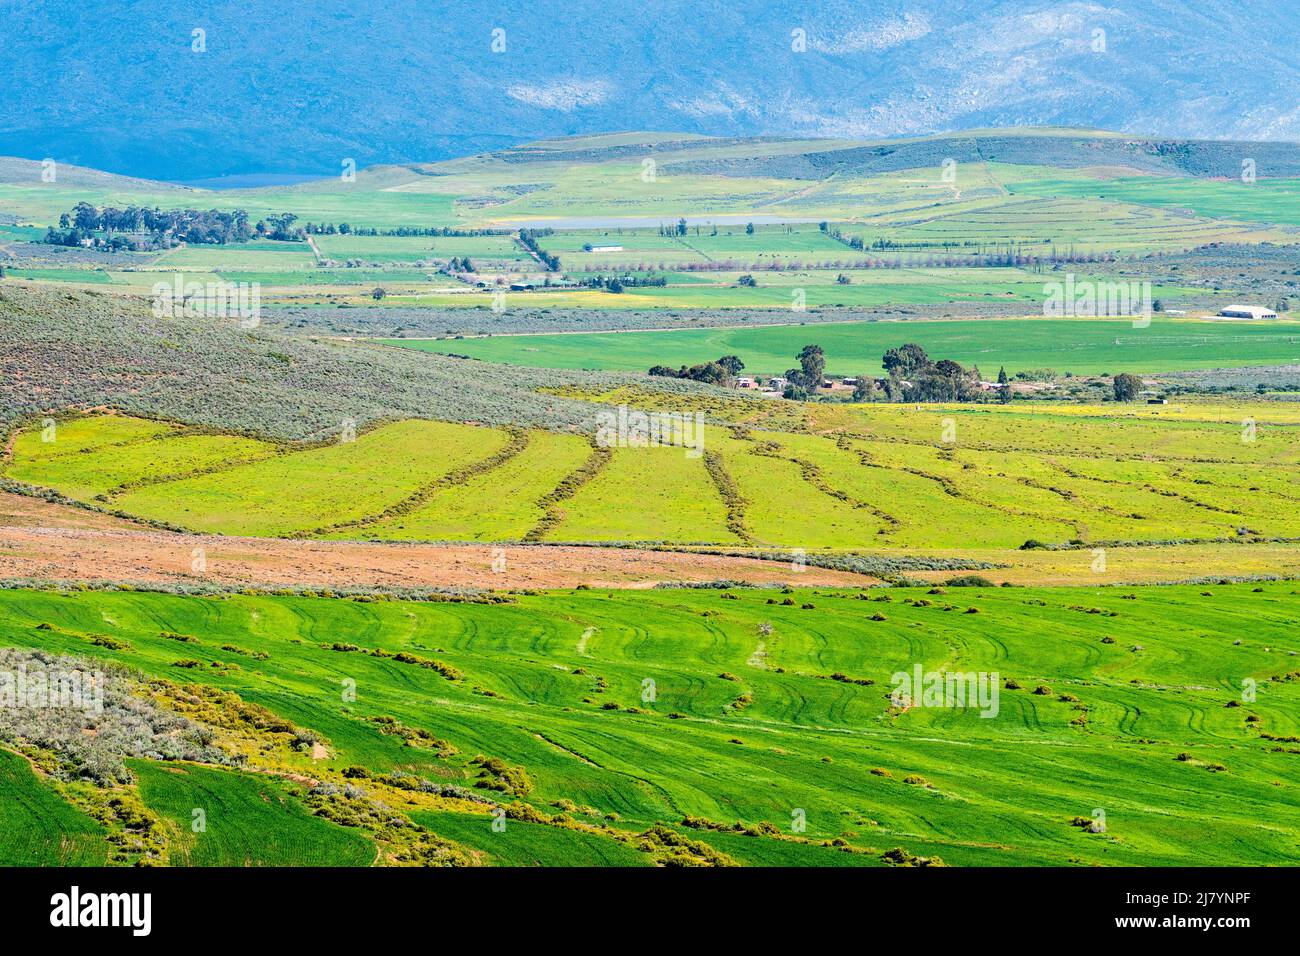 Vista aerea del paesaggio agricolo a Ceres, Capo Occidentale, Sudafrica con vista panoramica di terreni agricoli o fattorie nella stagione invernale concetto di agricoltura Foto Stock